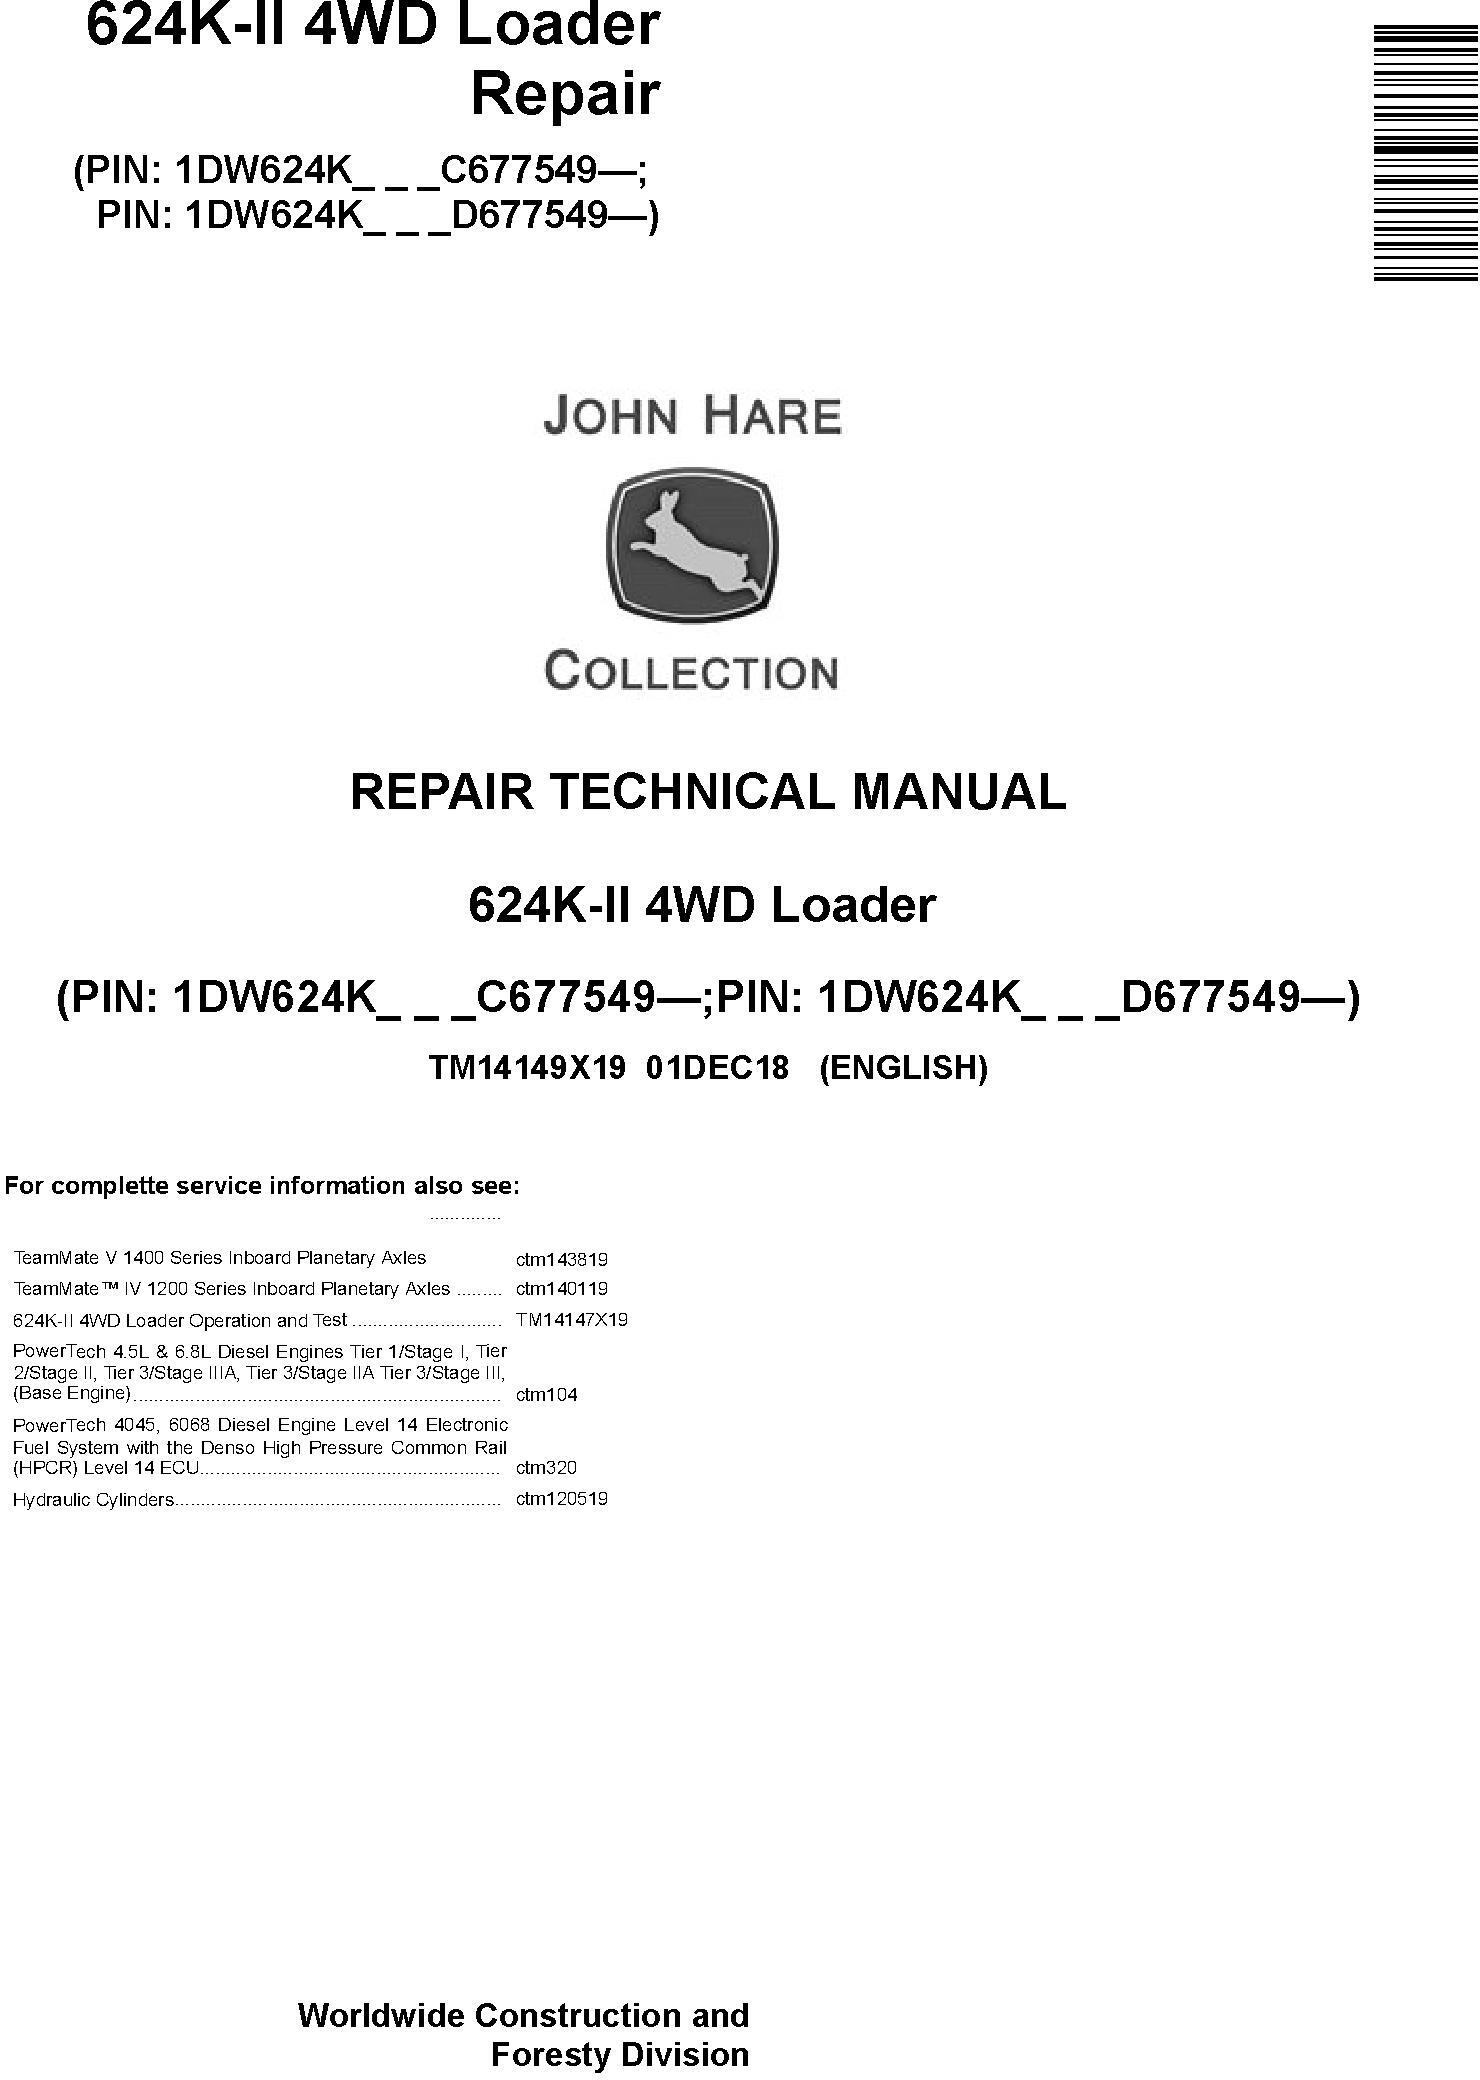 John Deere 624K-II (SN. C677549-; D677549-) 4WD Loader Repair Technical Service Manual (TM14149X19) - 19054